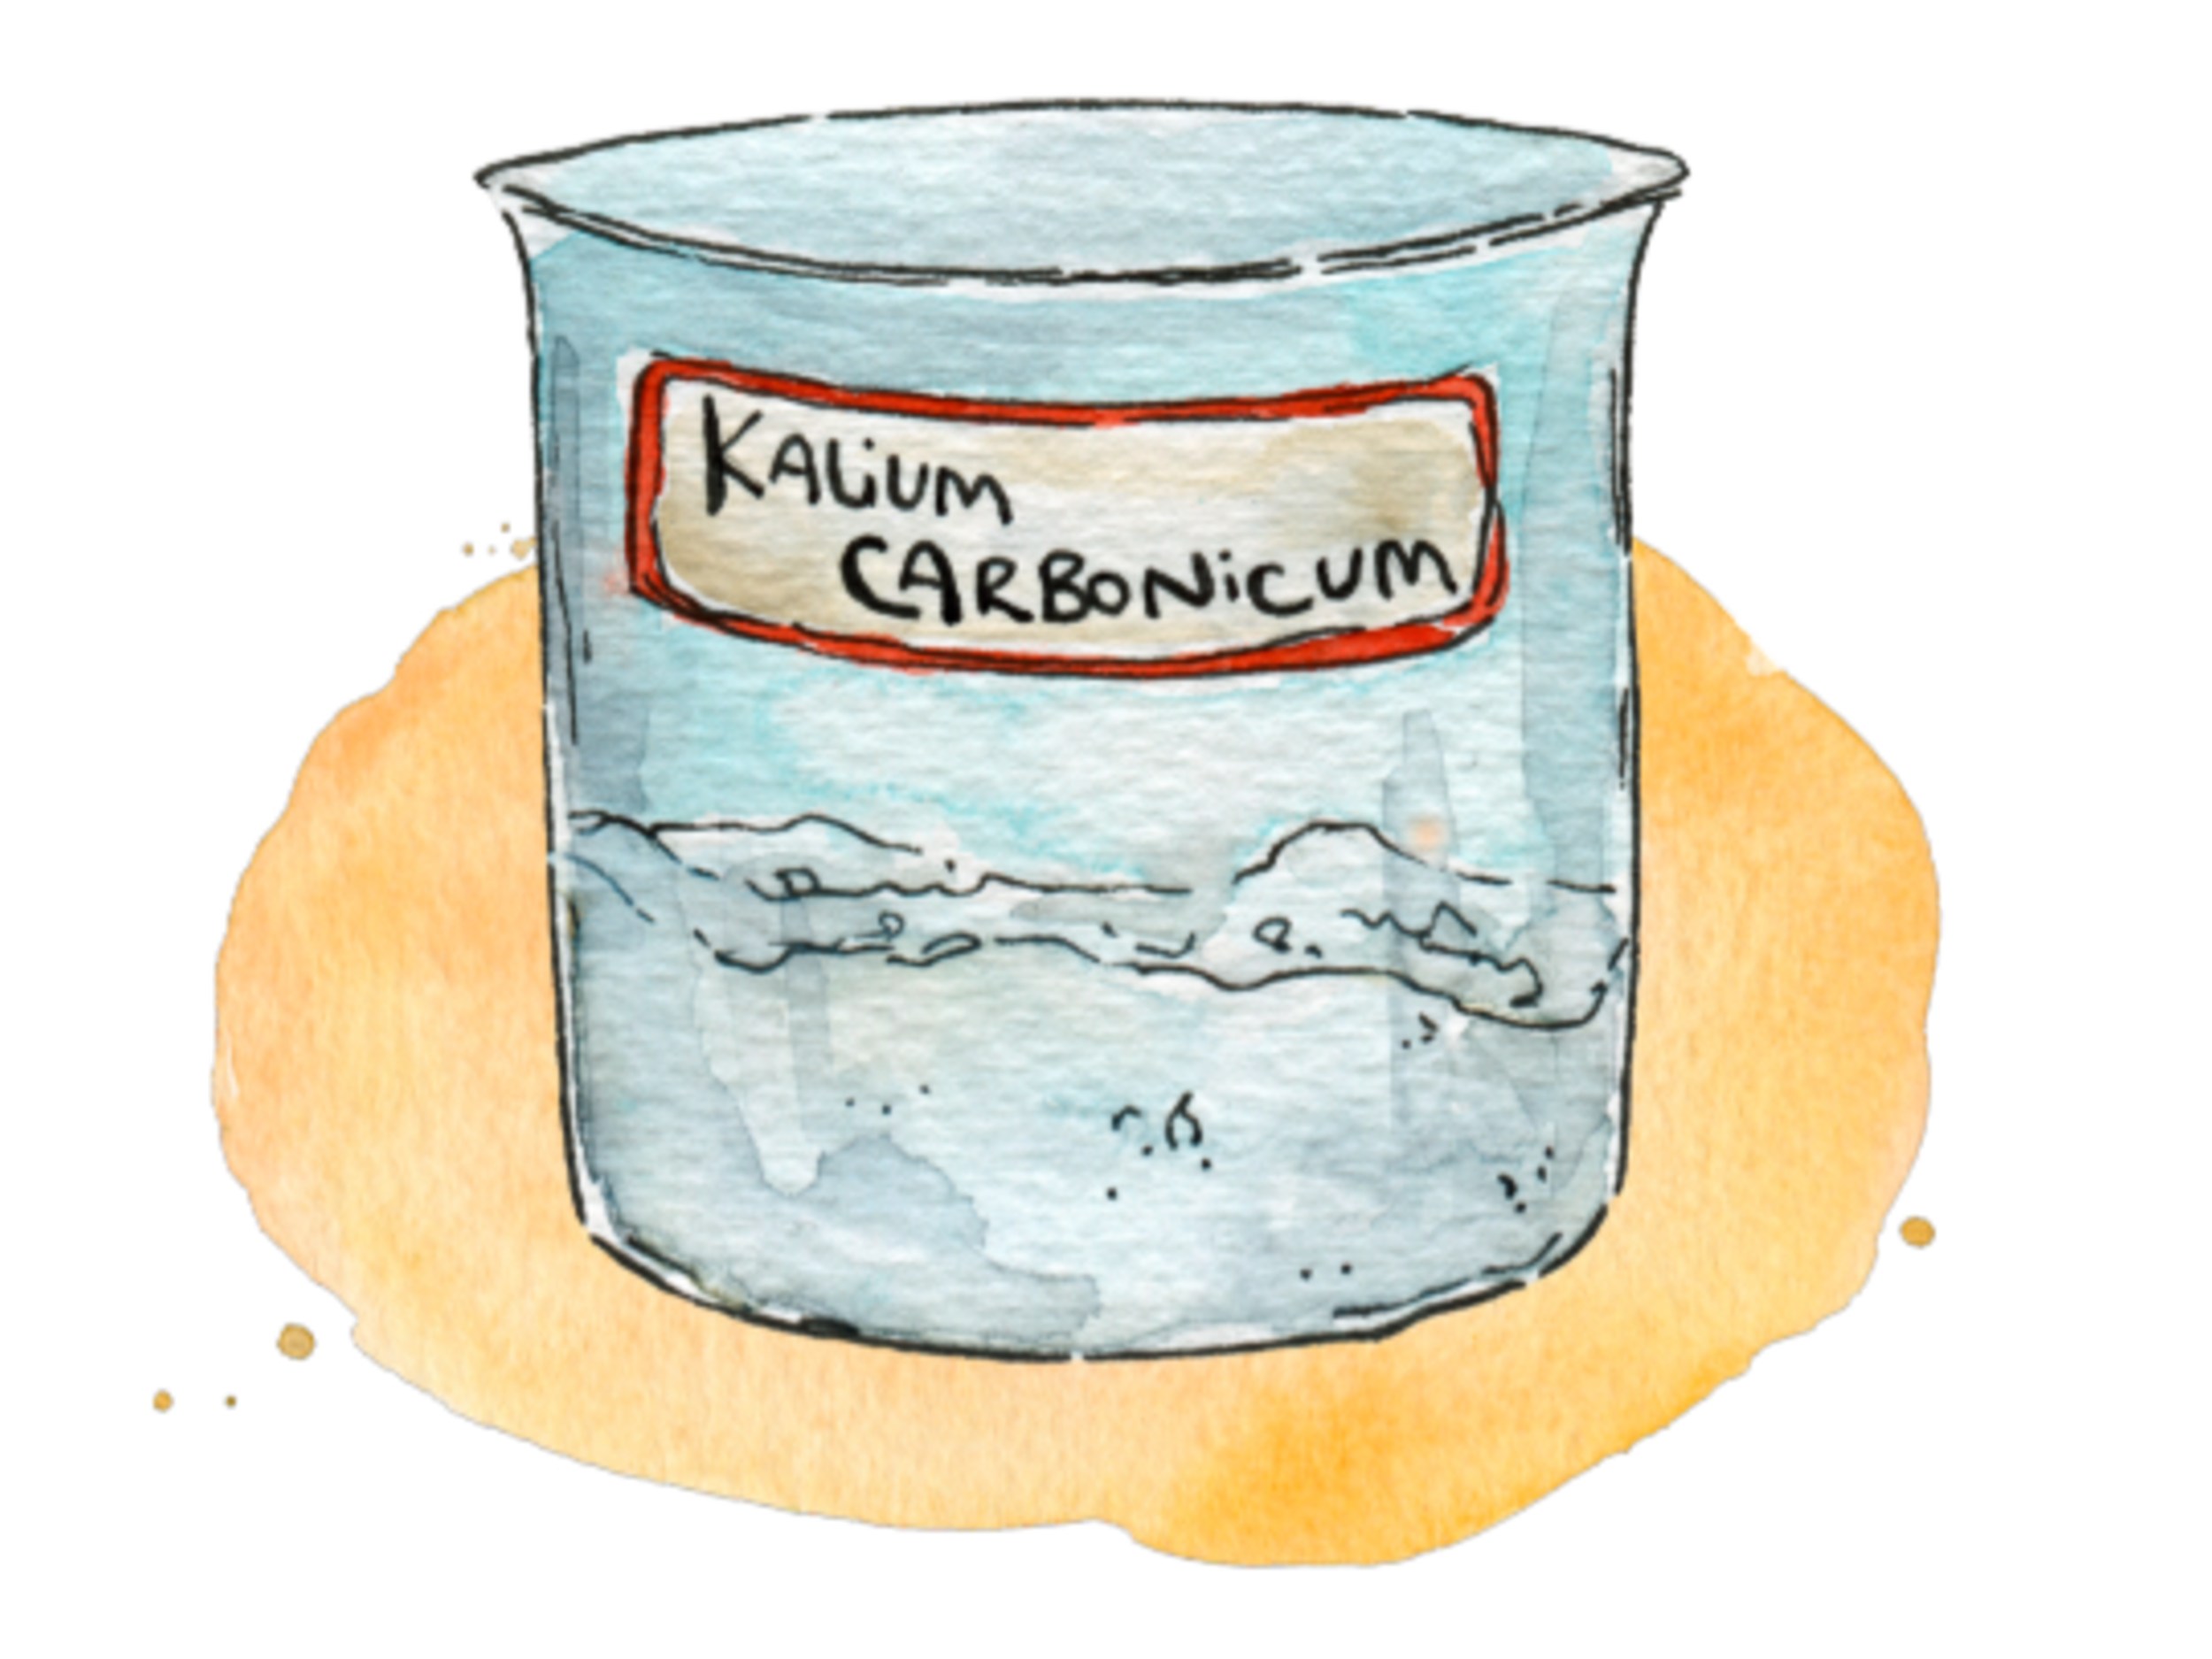 Illustration Kalium carbonicum